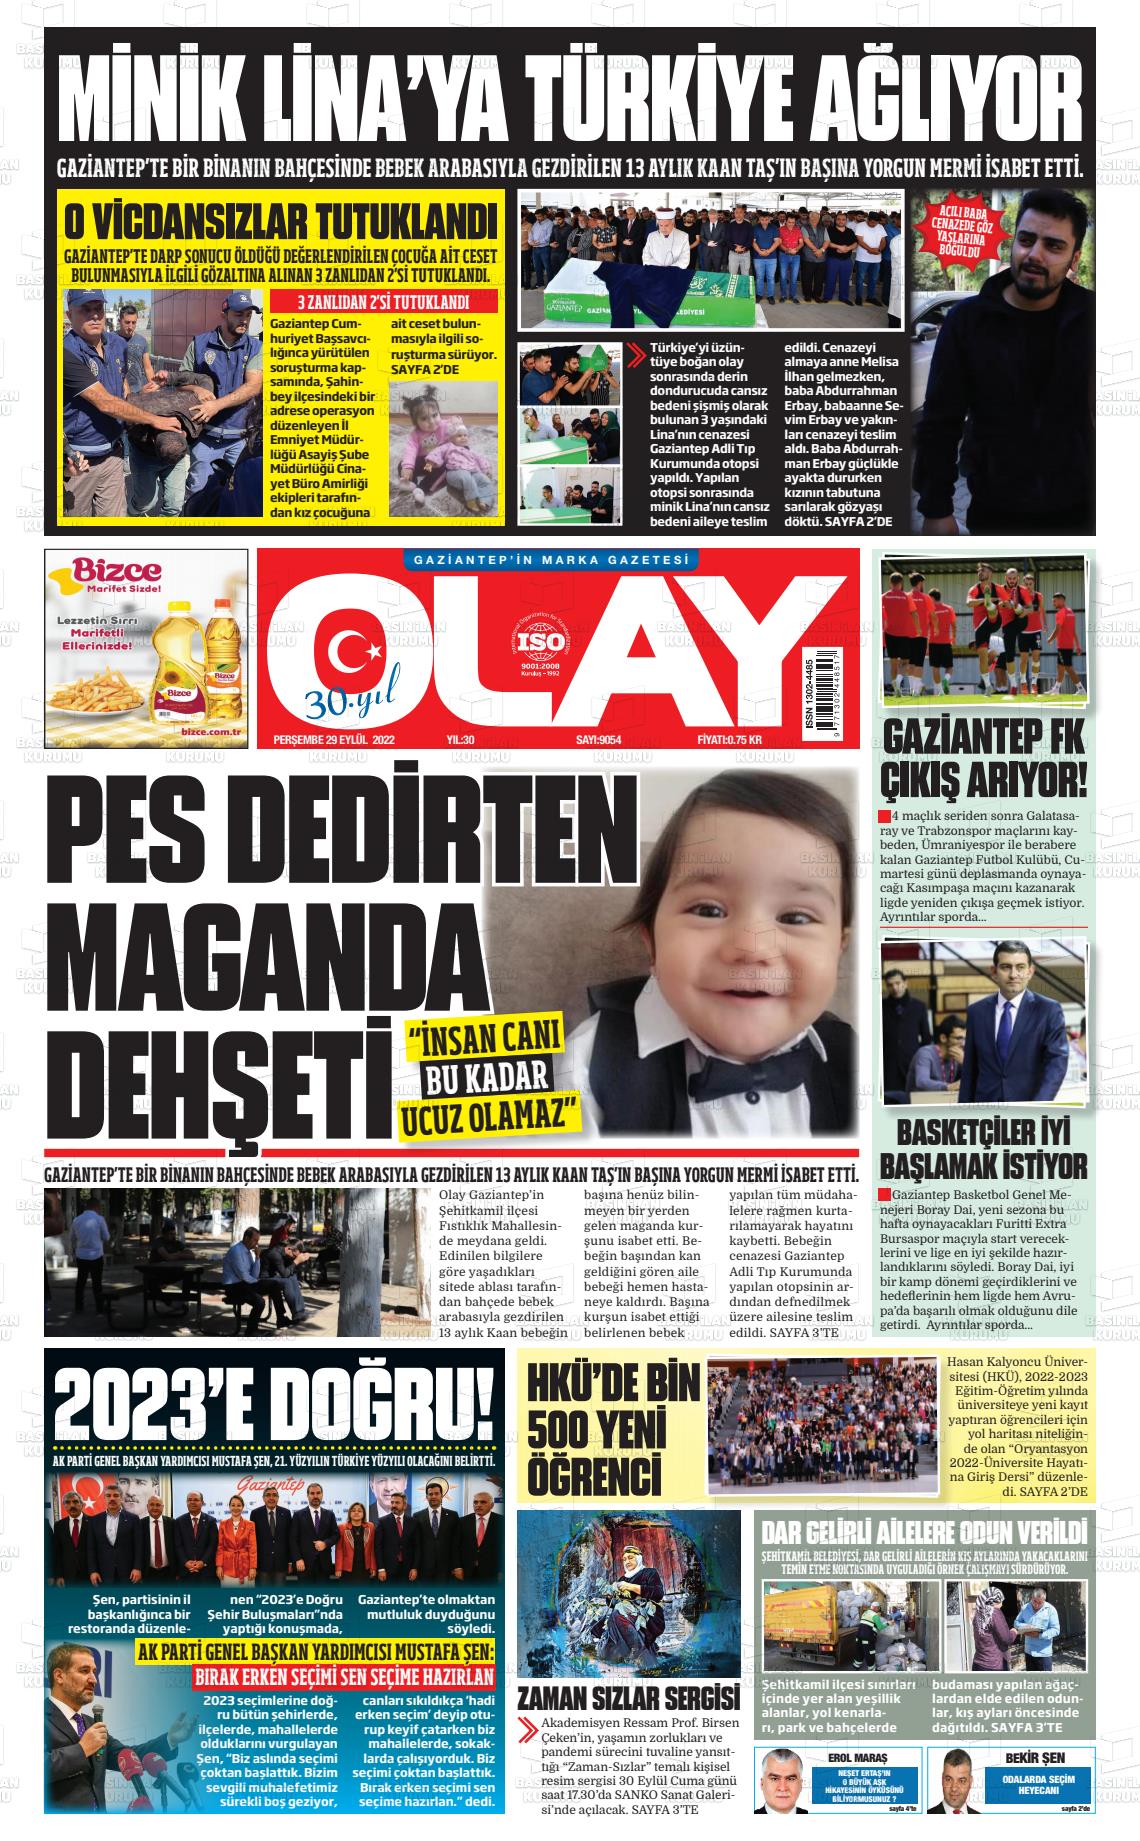 29 Eylül 2022 Olay Medya Gazete Manşeti